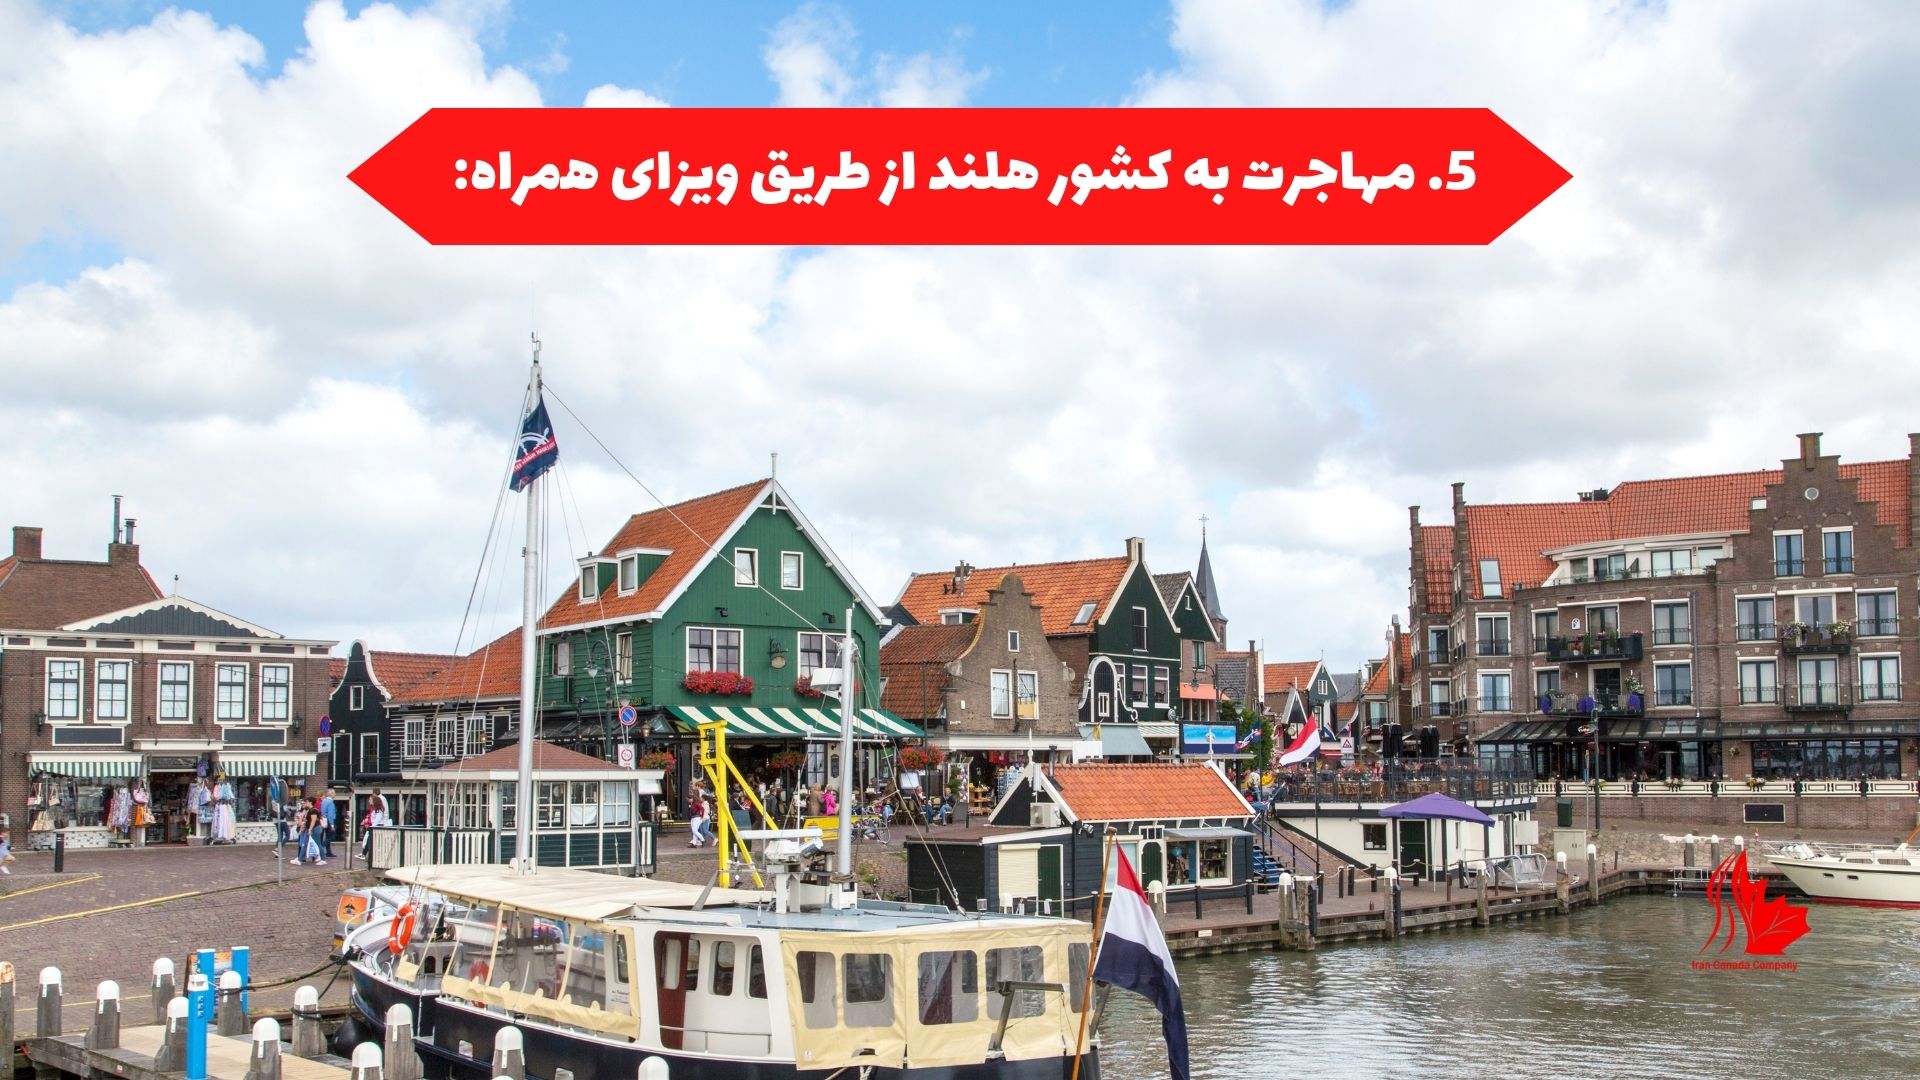 مهاجرت به کشور هلند از طریق ویزای همراه: